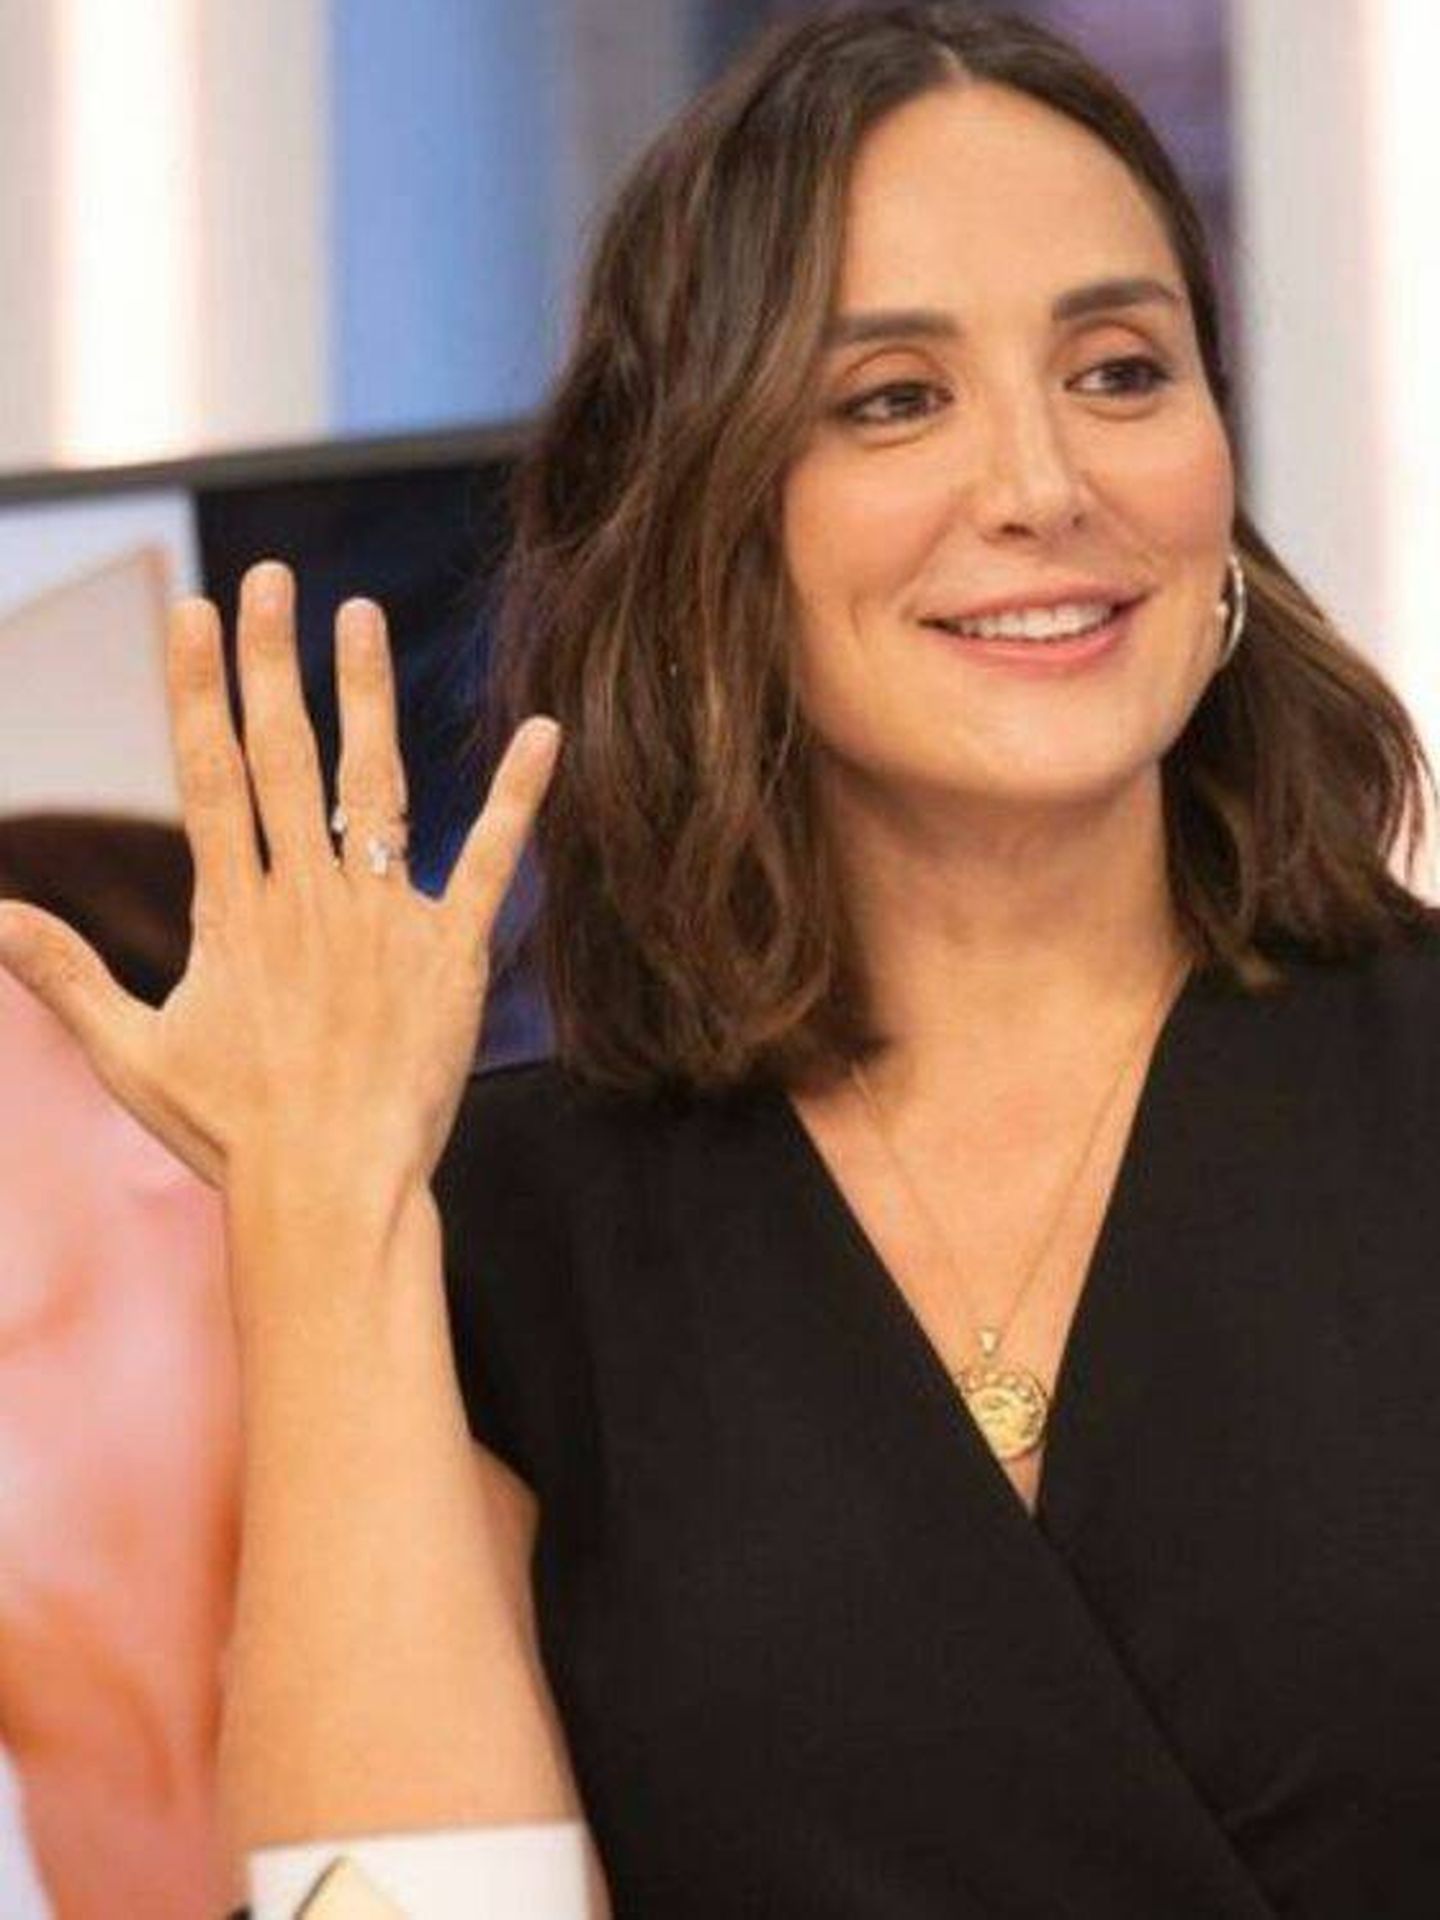  Tamara Falcó, mostrando su anillo de compromiso. ('El hormiguero'/Carlos López)